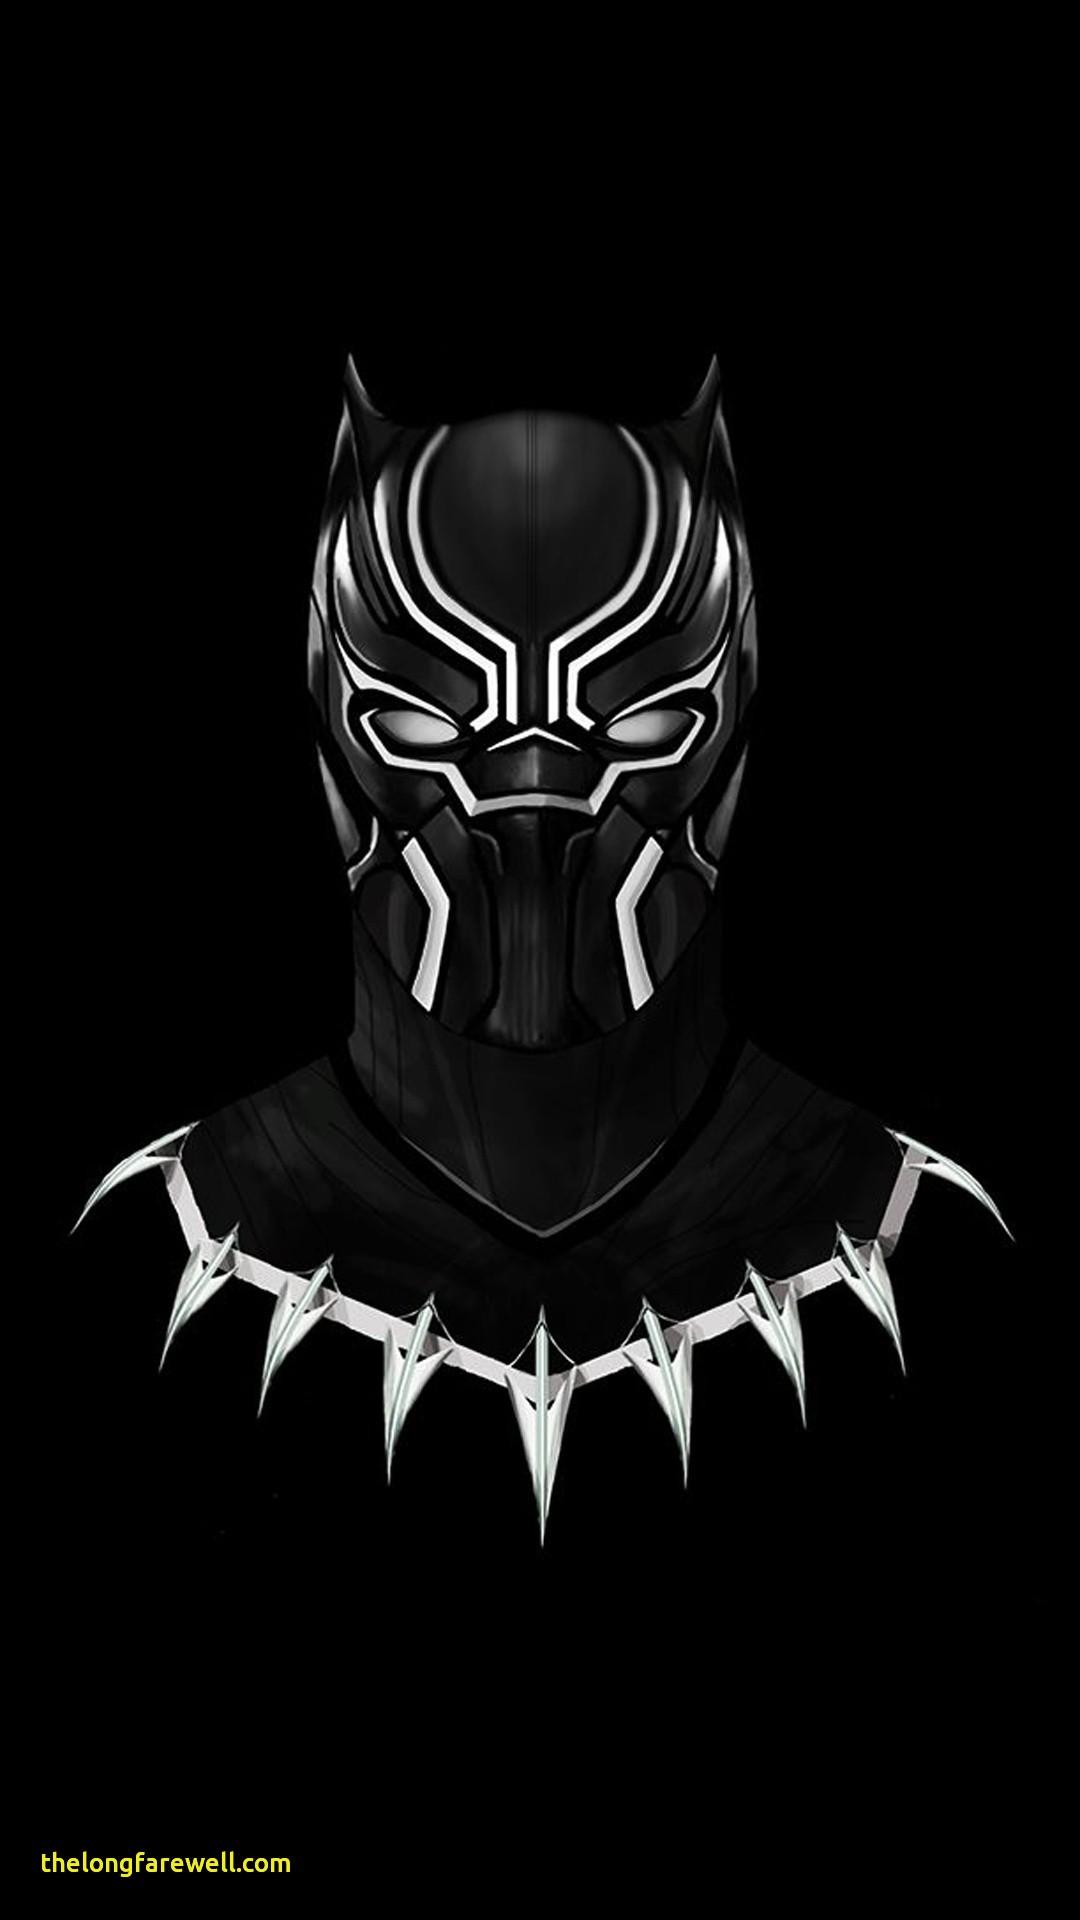 51+ Black Panther Logo Wallpaper 4k